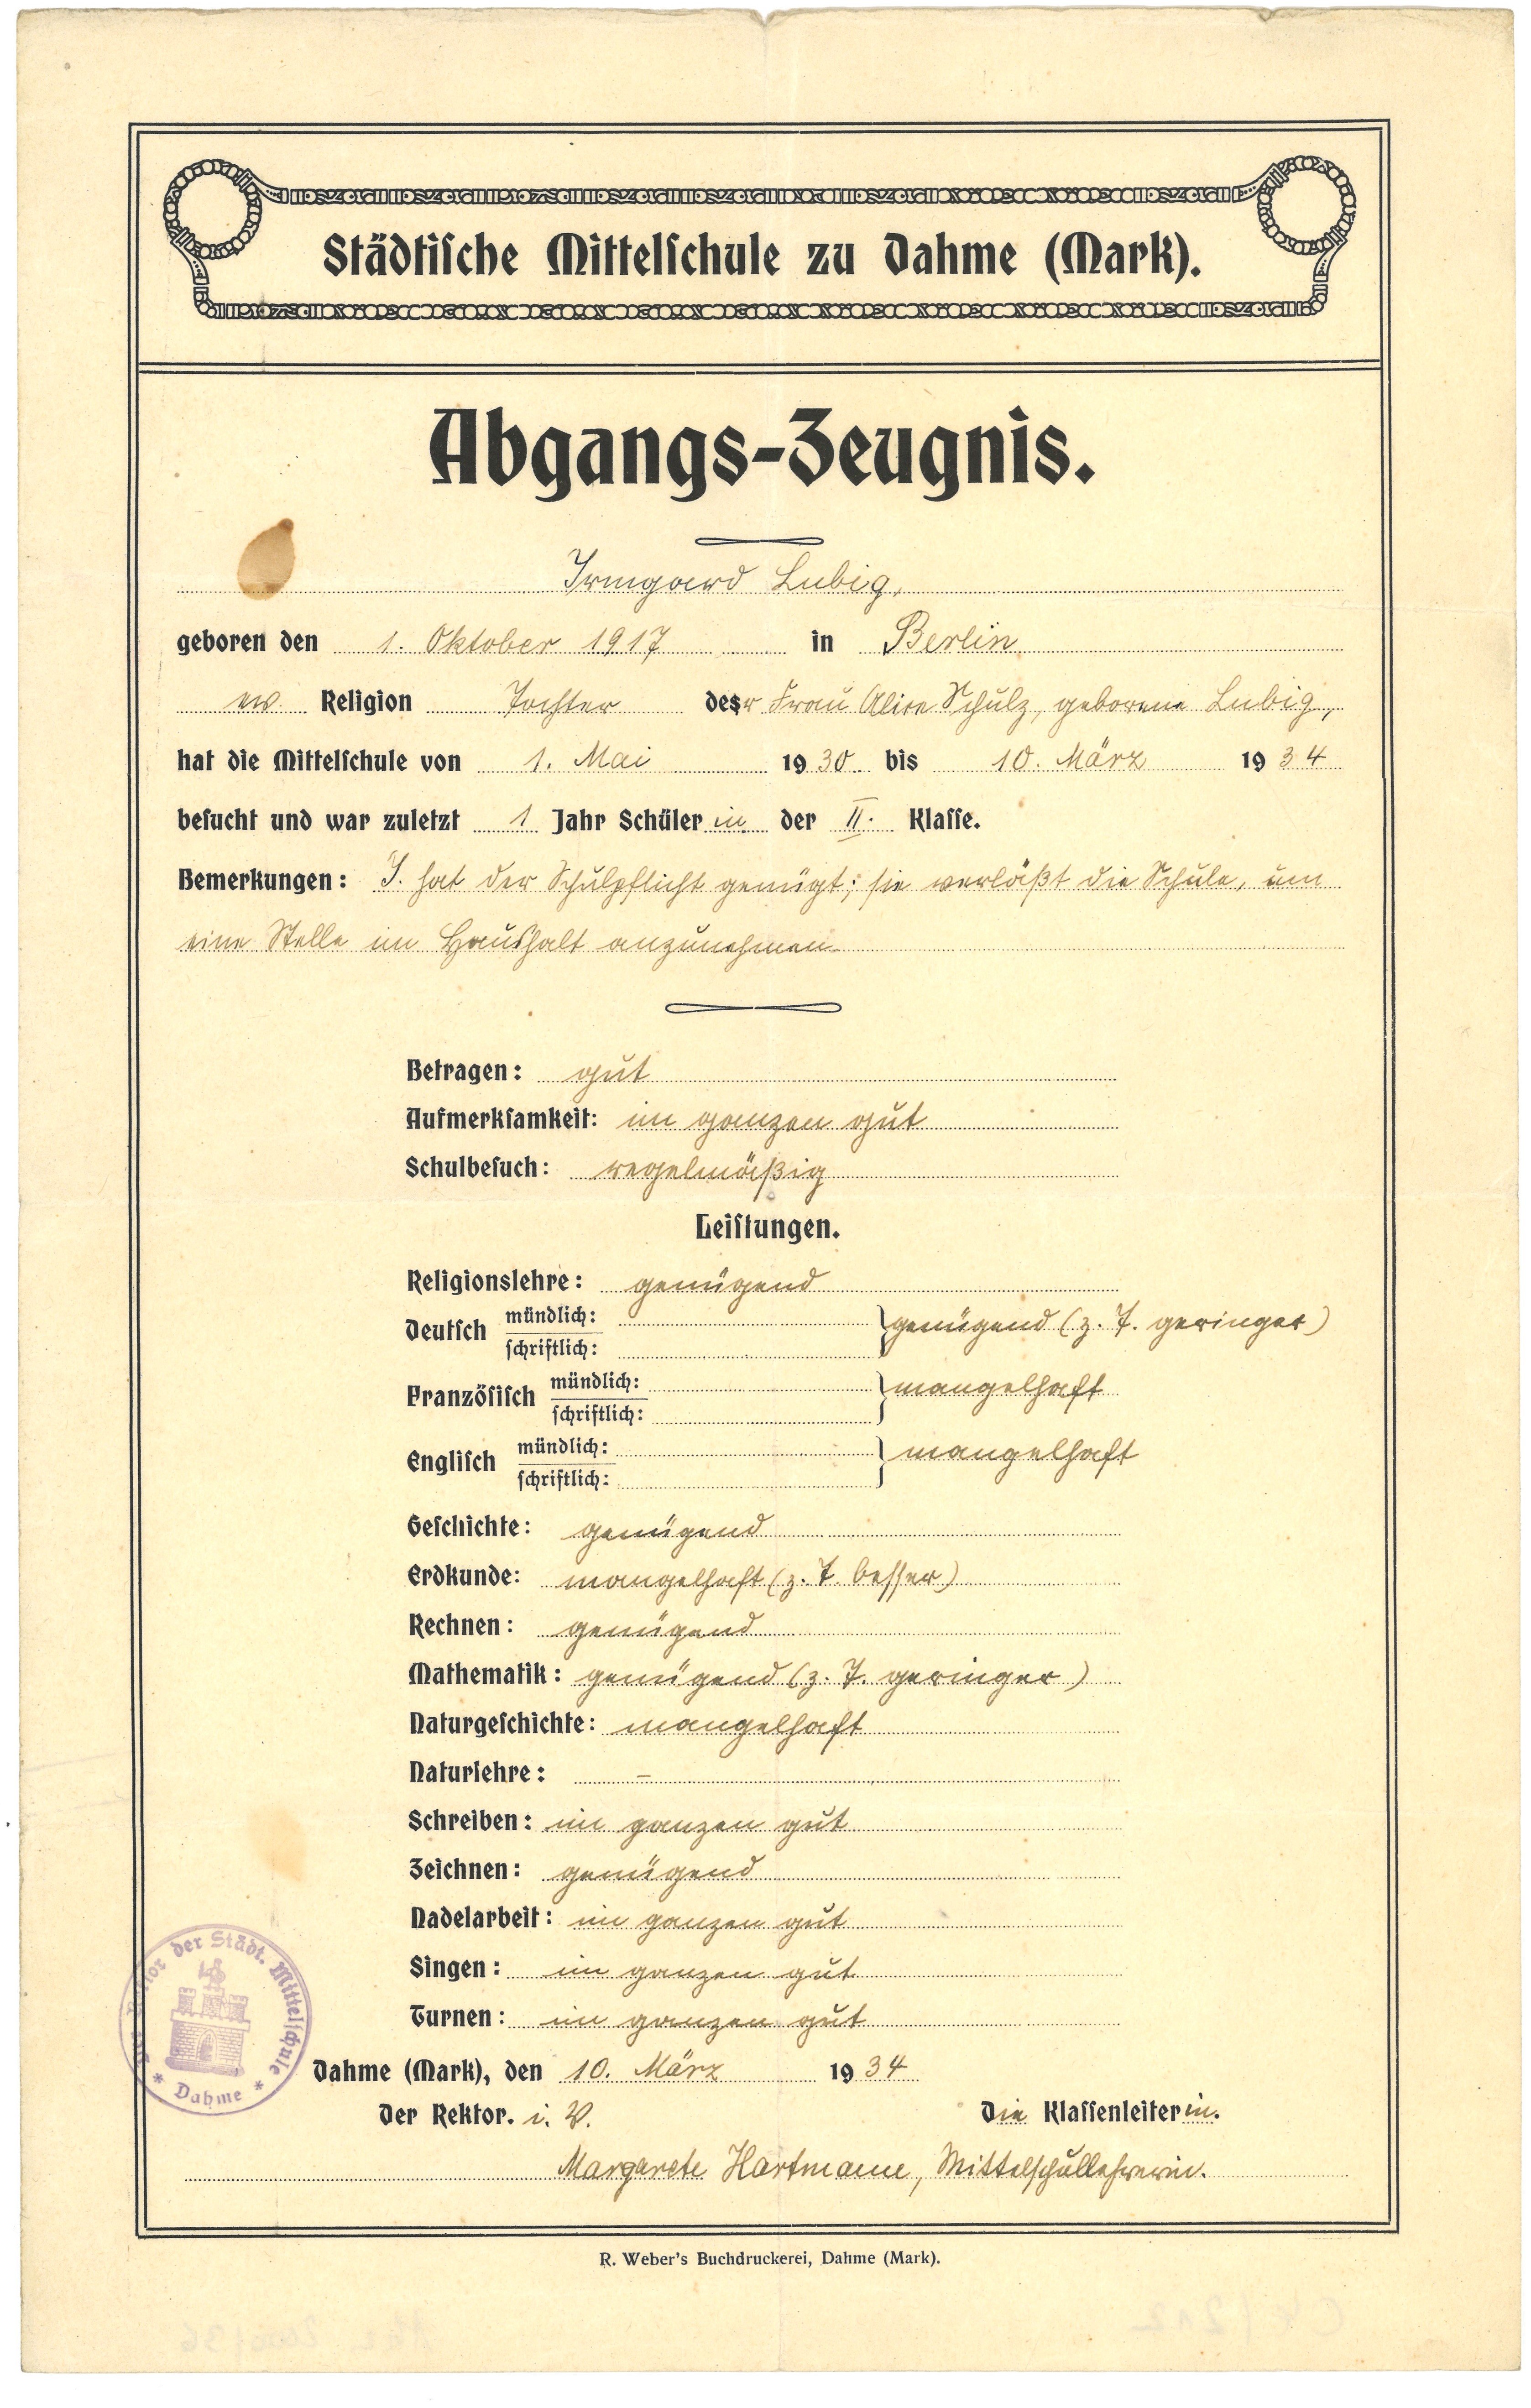 Abgangszeugnis der Städtischen Mittelschule Dahme (Mark) für Irmgard Lubig 1934 (Landesgeschichtliche Vereinigung für die Mark Brandenburg e.V., Archiv CC BY)